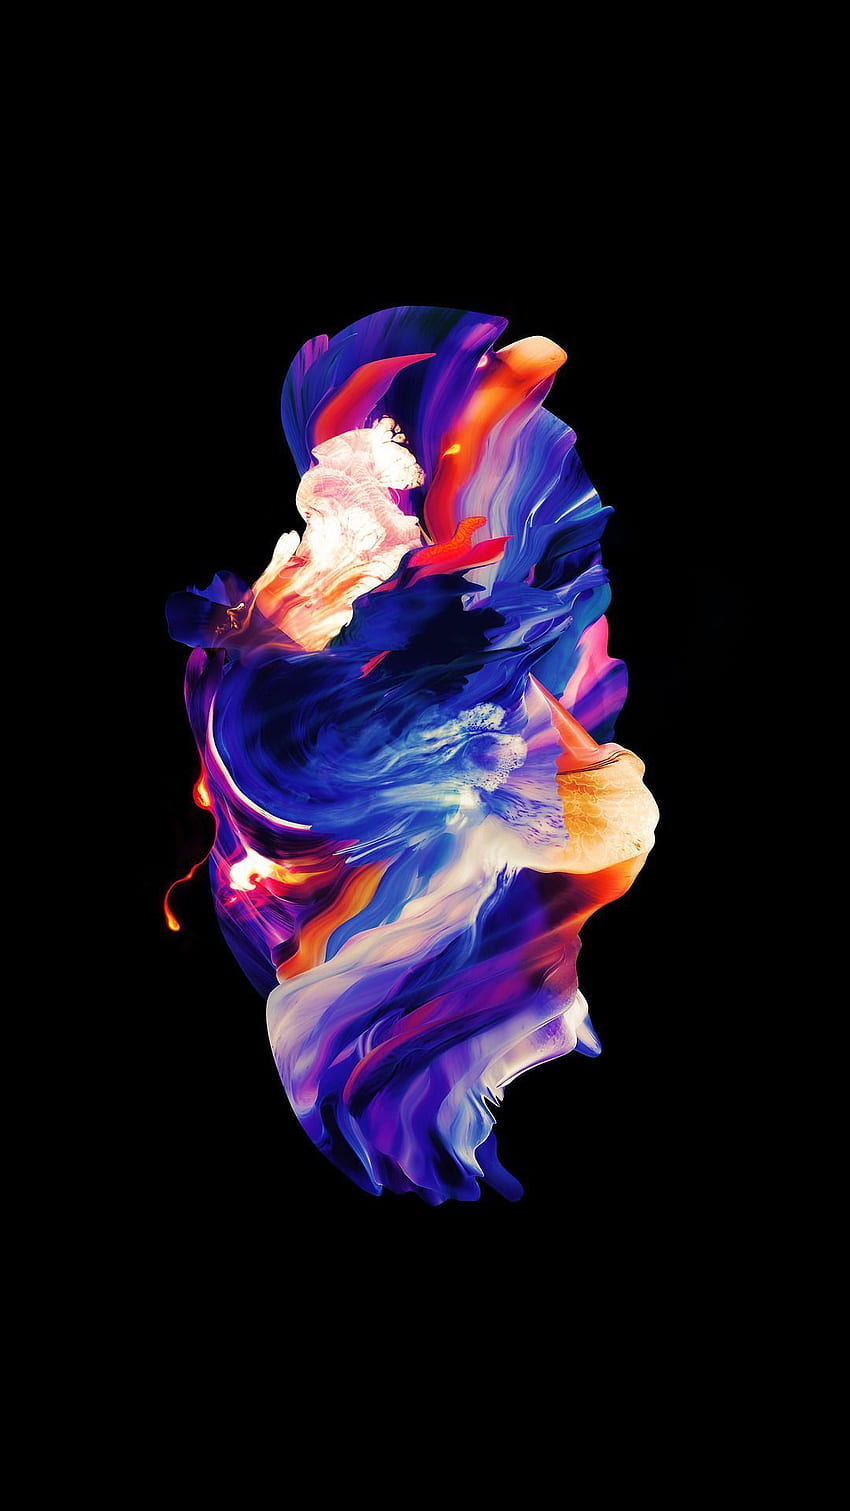 Amoled Colorful, Cool Vibrant Super AMOLED HD phone wallpaper